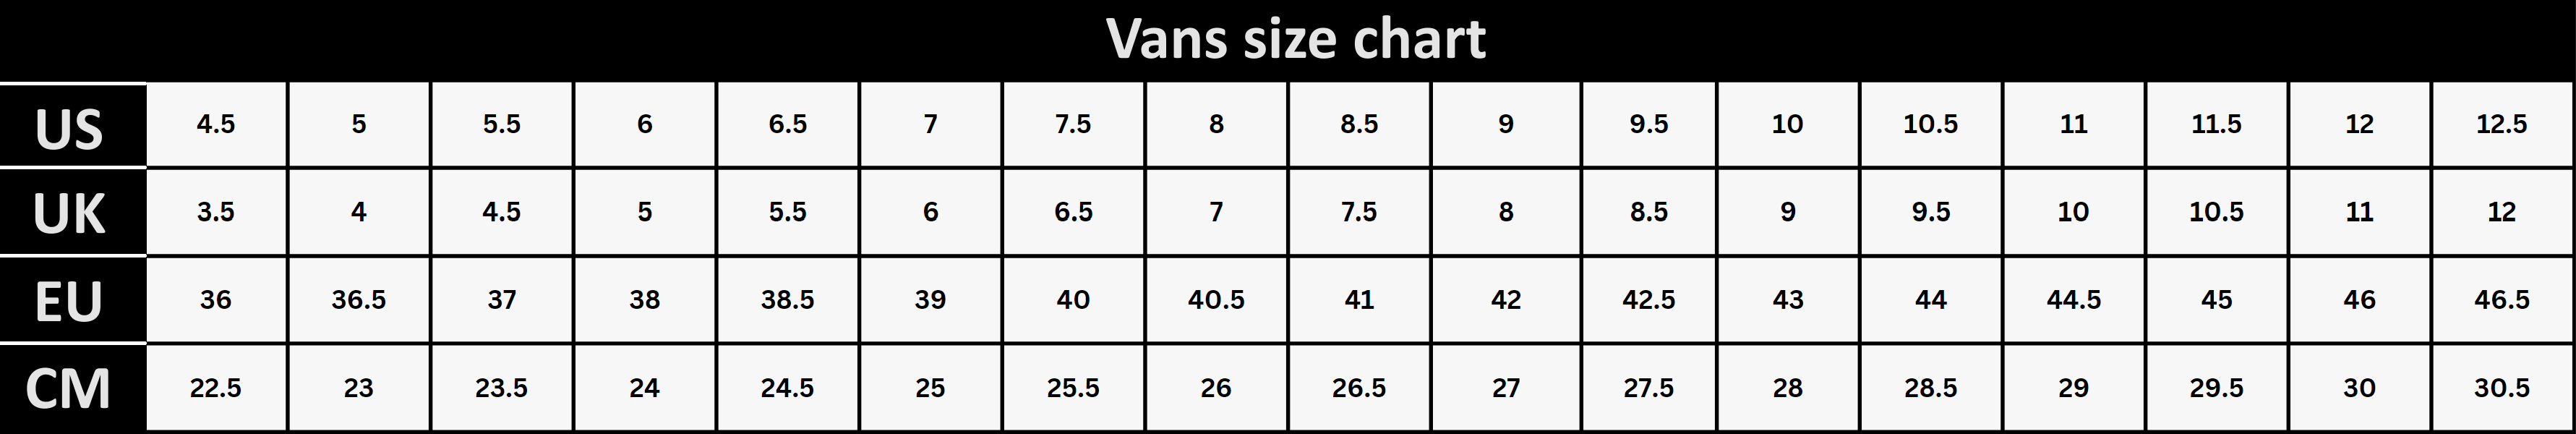 Vans size chart